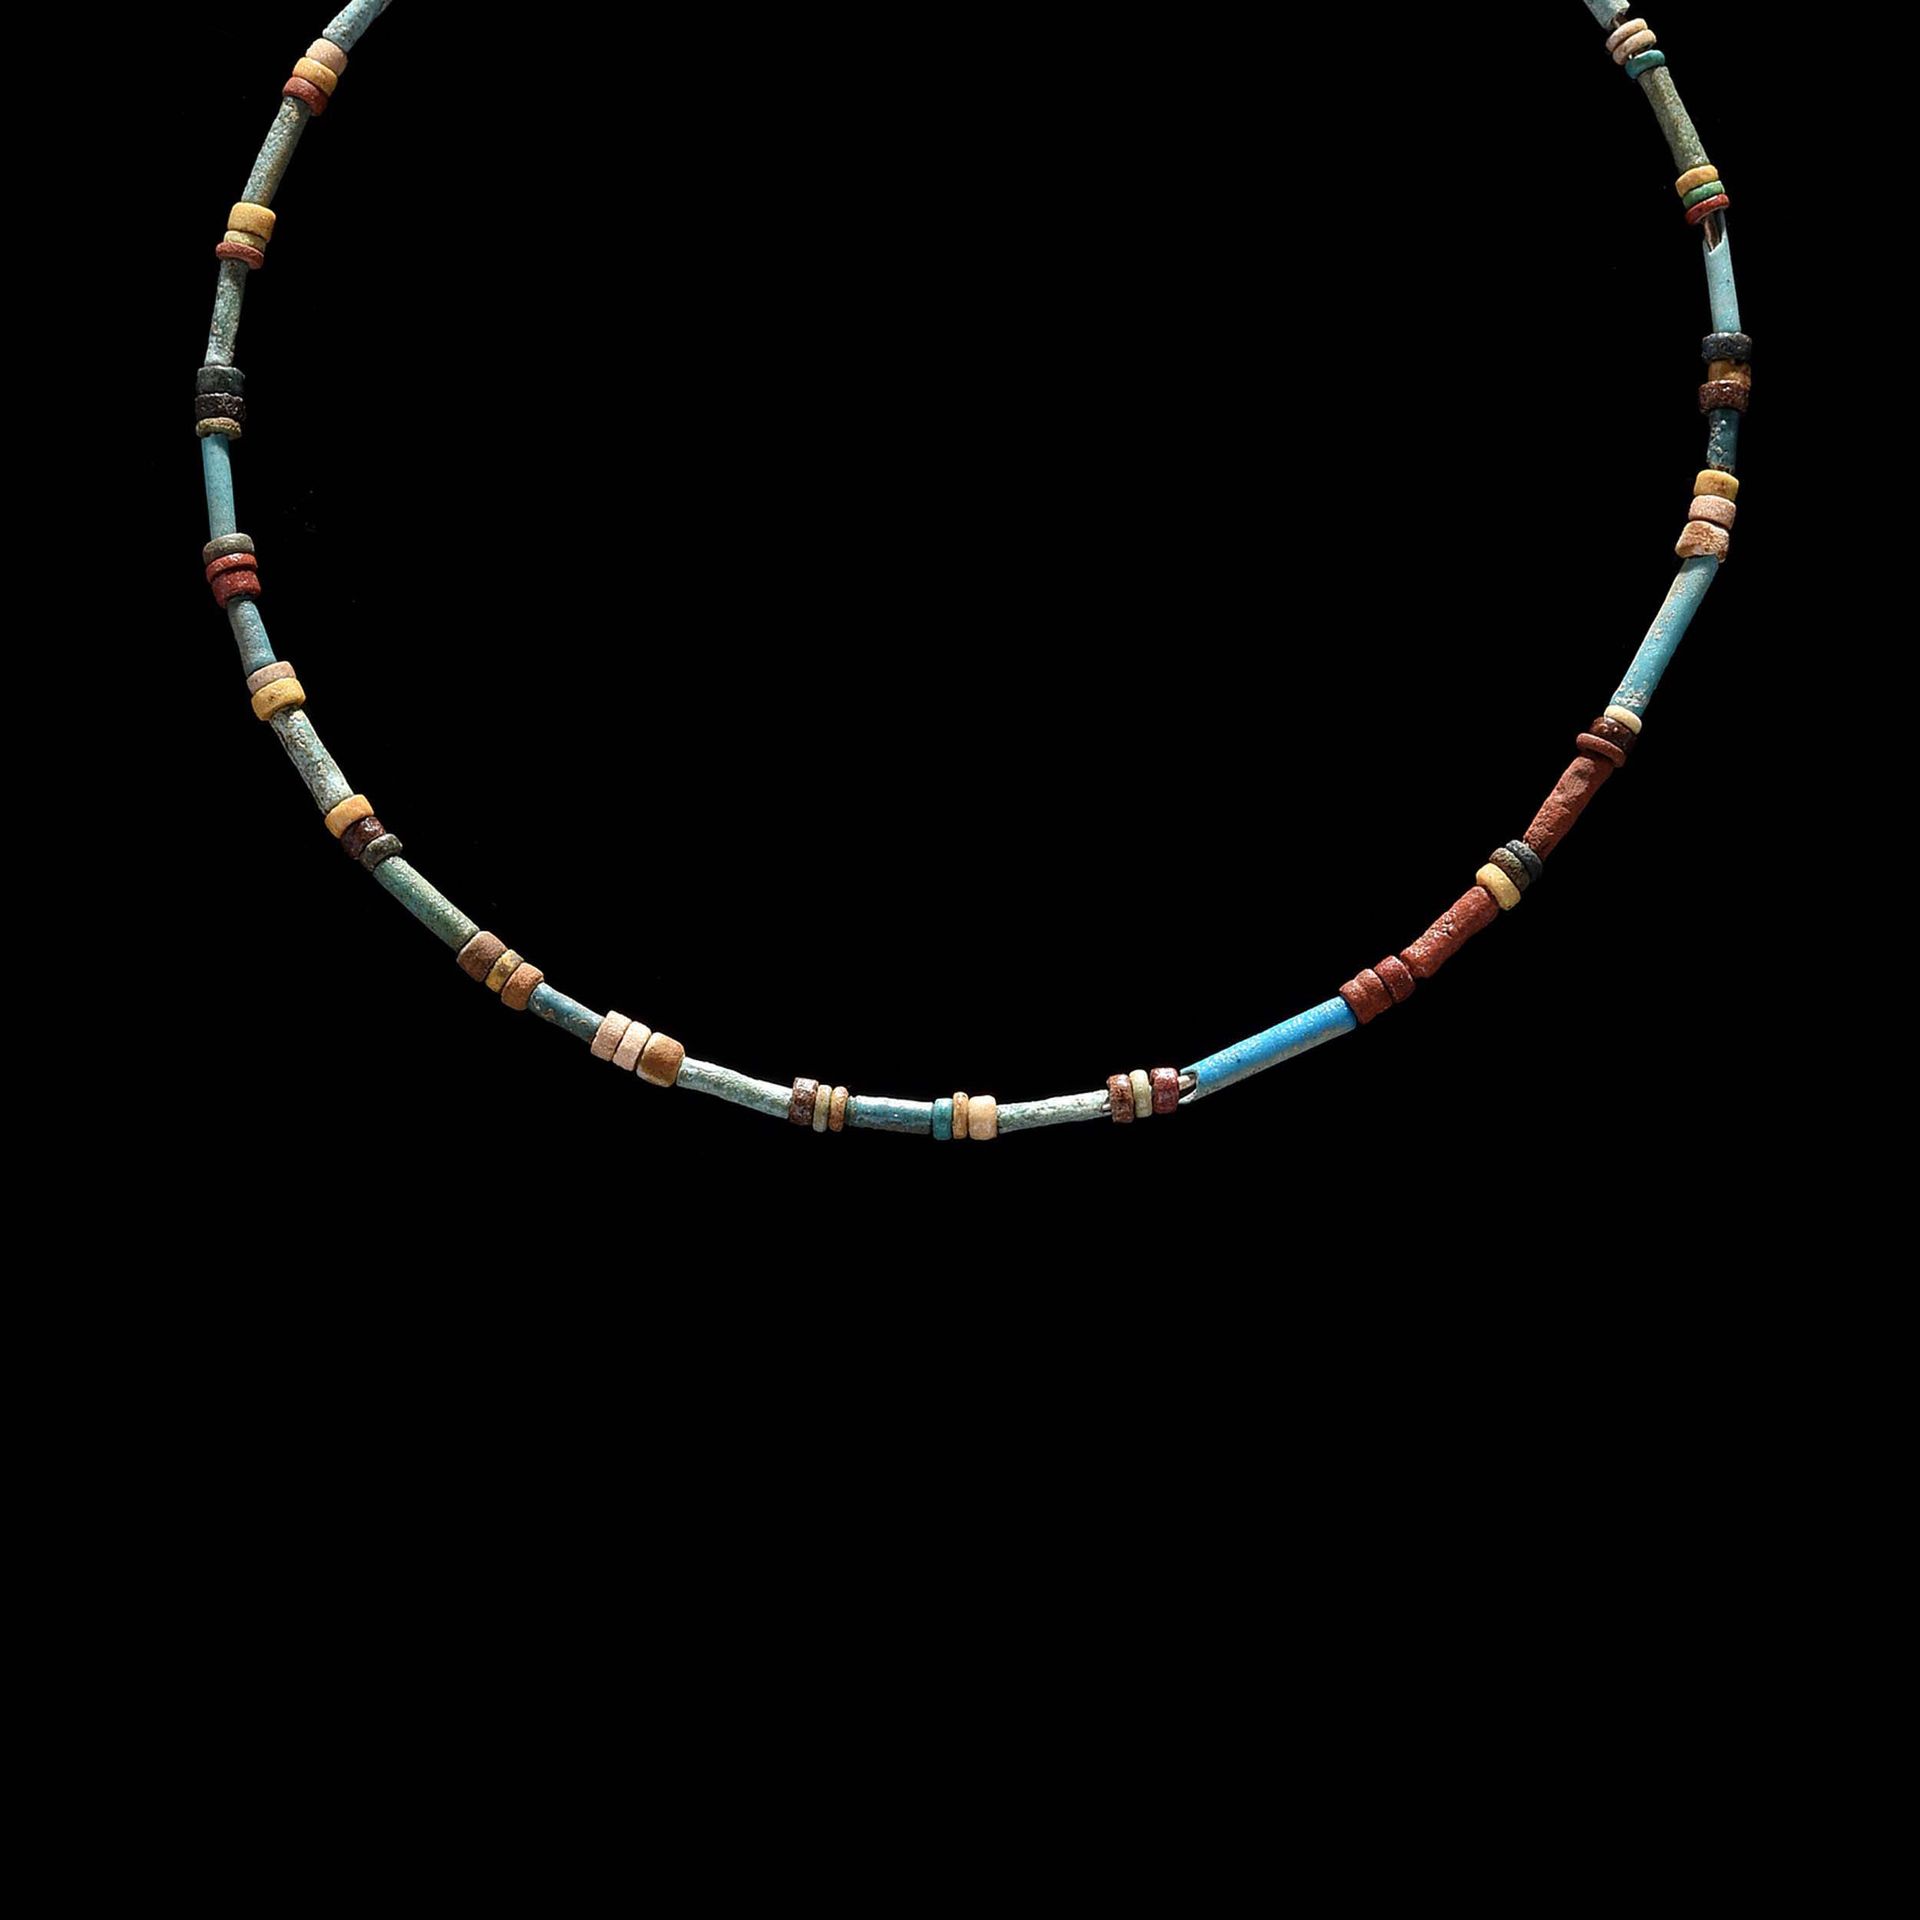 Null 项链



由一排五颜六色的陶制珠子组成。

出处

私人收藏，1990年11月12日在戛纳的一家画廊购买